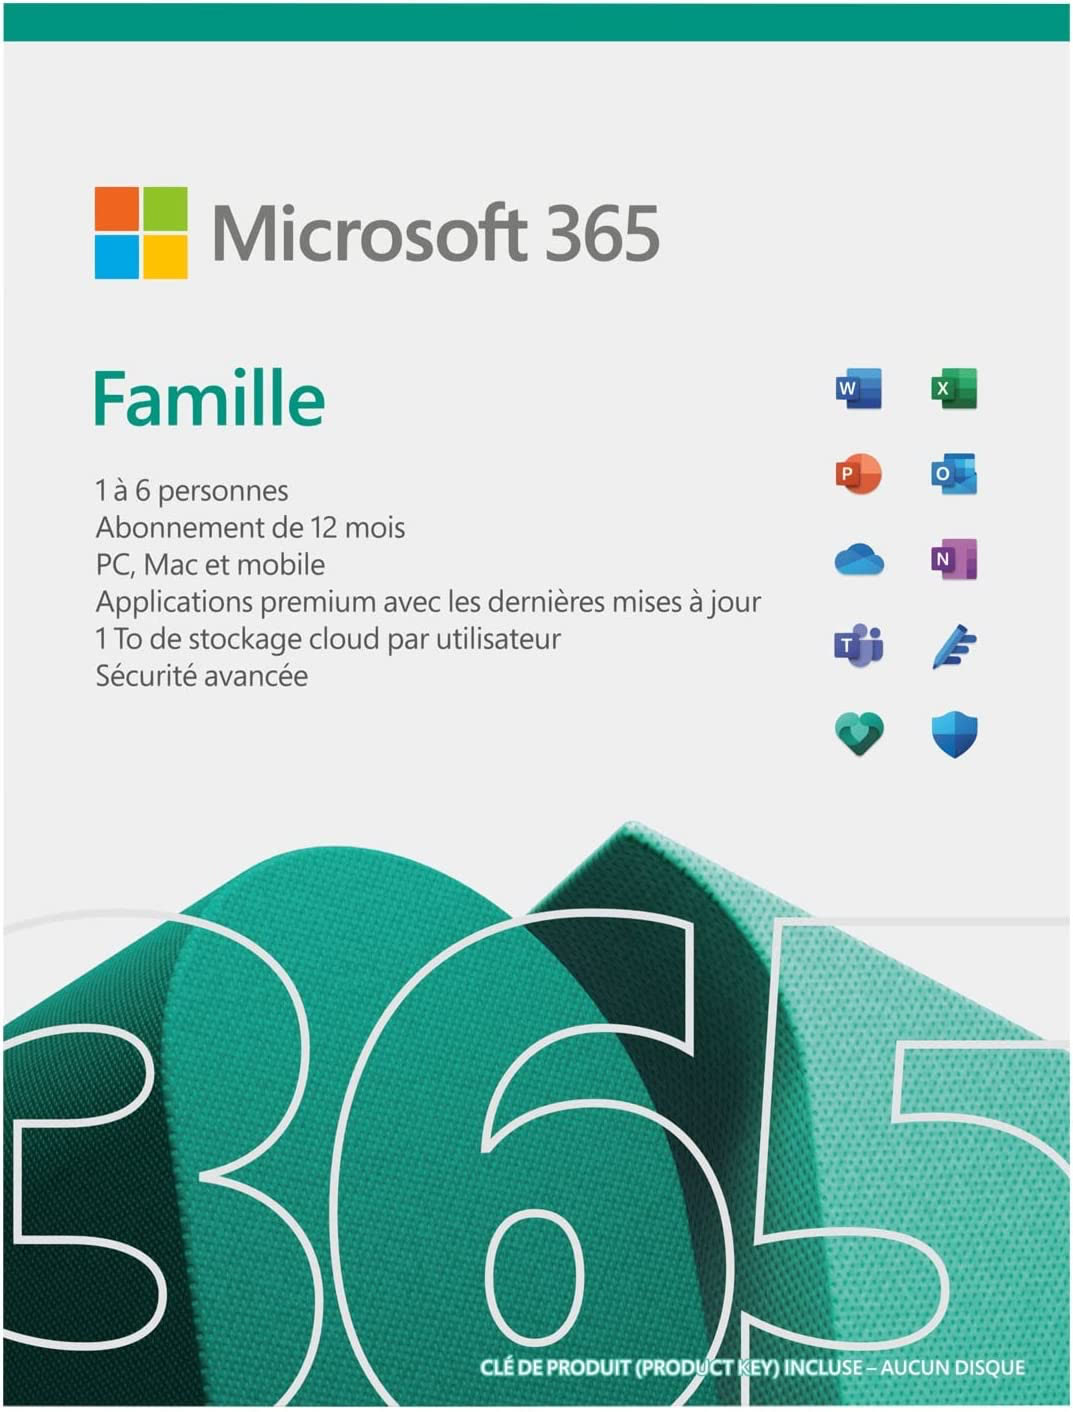 Promo : 15 mois d'Office 365 Famille pour 53 € au lieu de 99